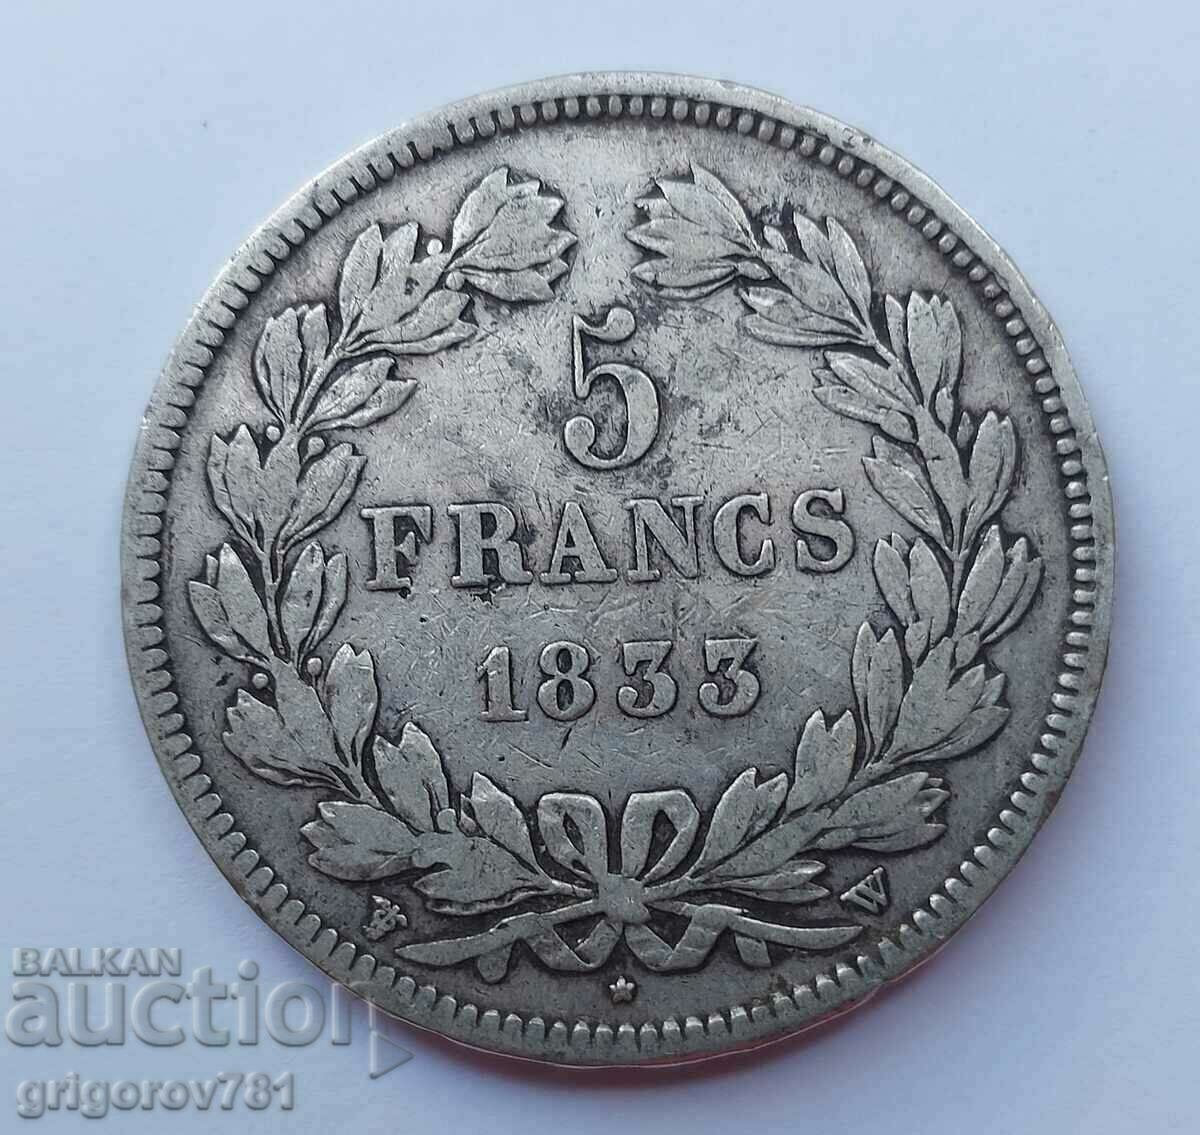 Ασημένιο 5 φράγκα Γαλλία 1833 W Louis Philippe ασημένιο νόμισμα #2